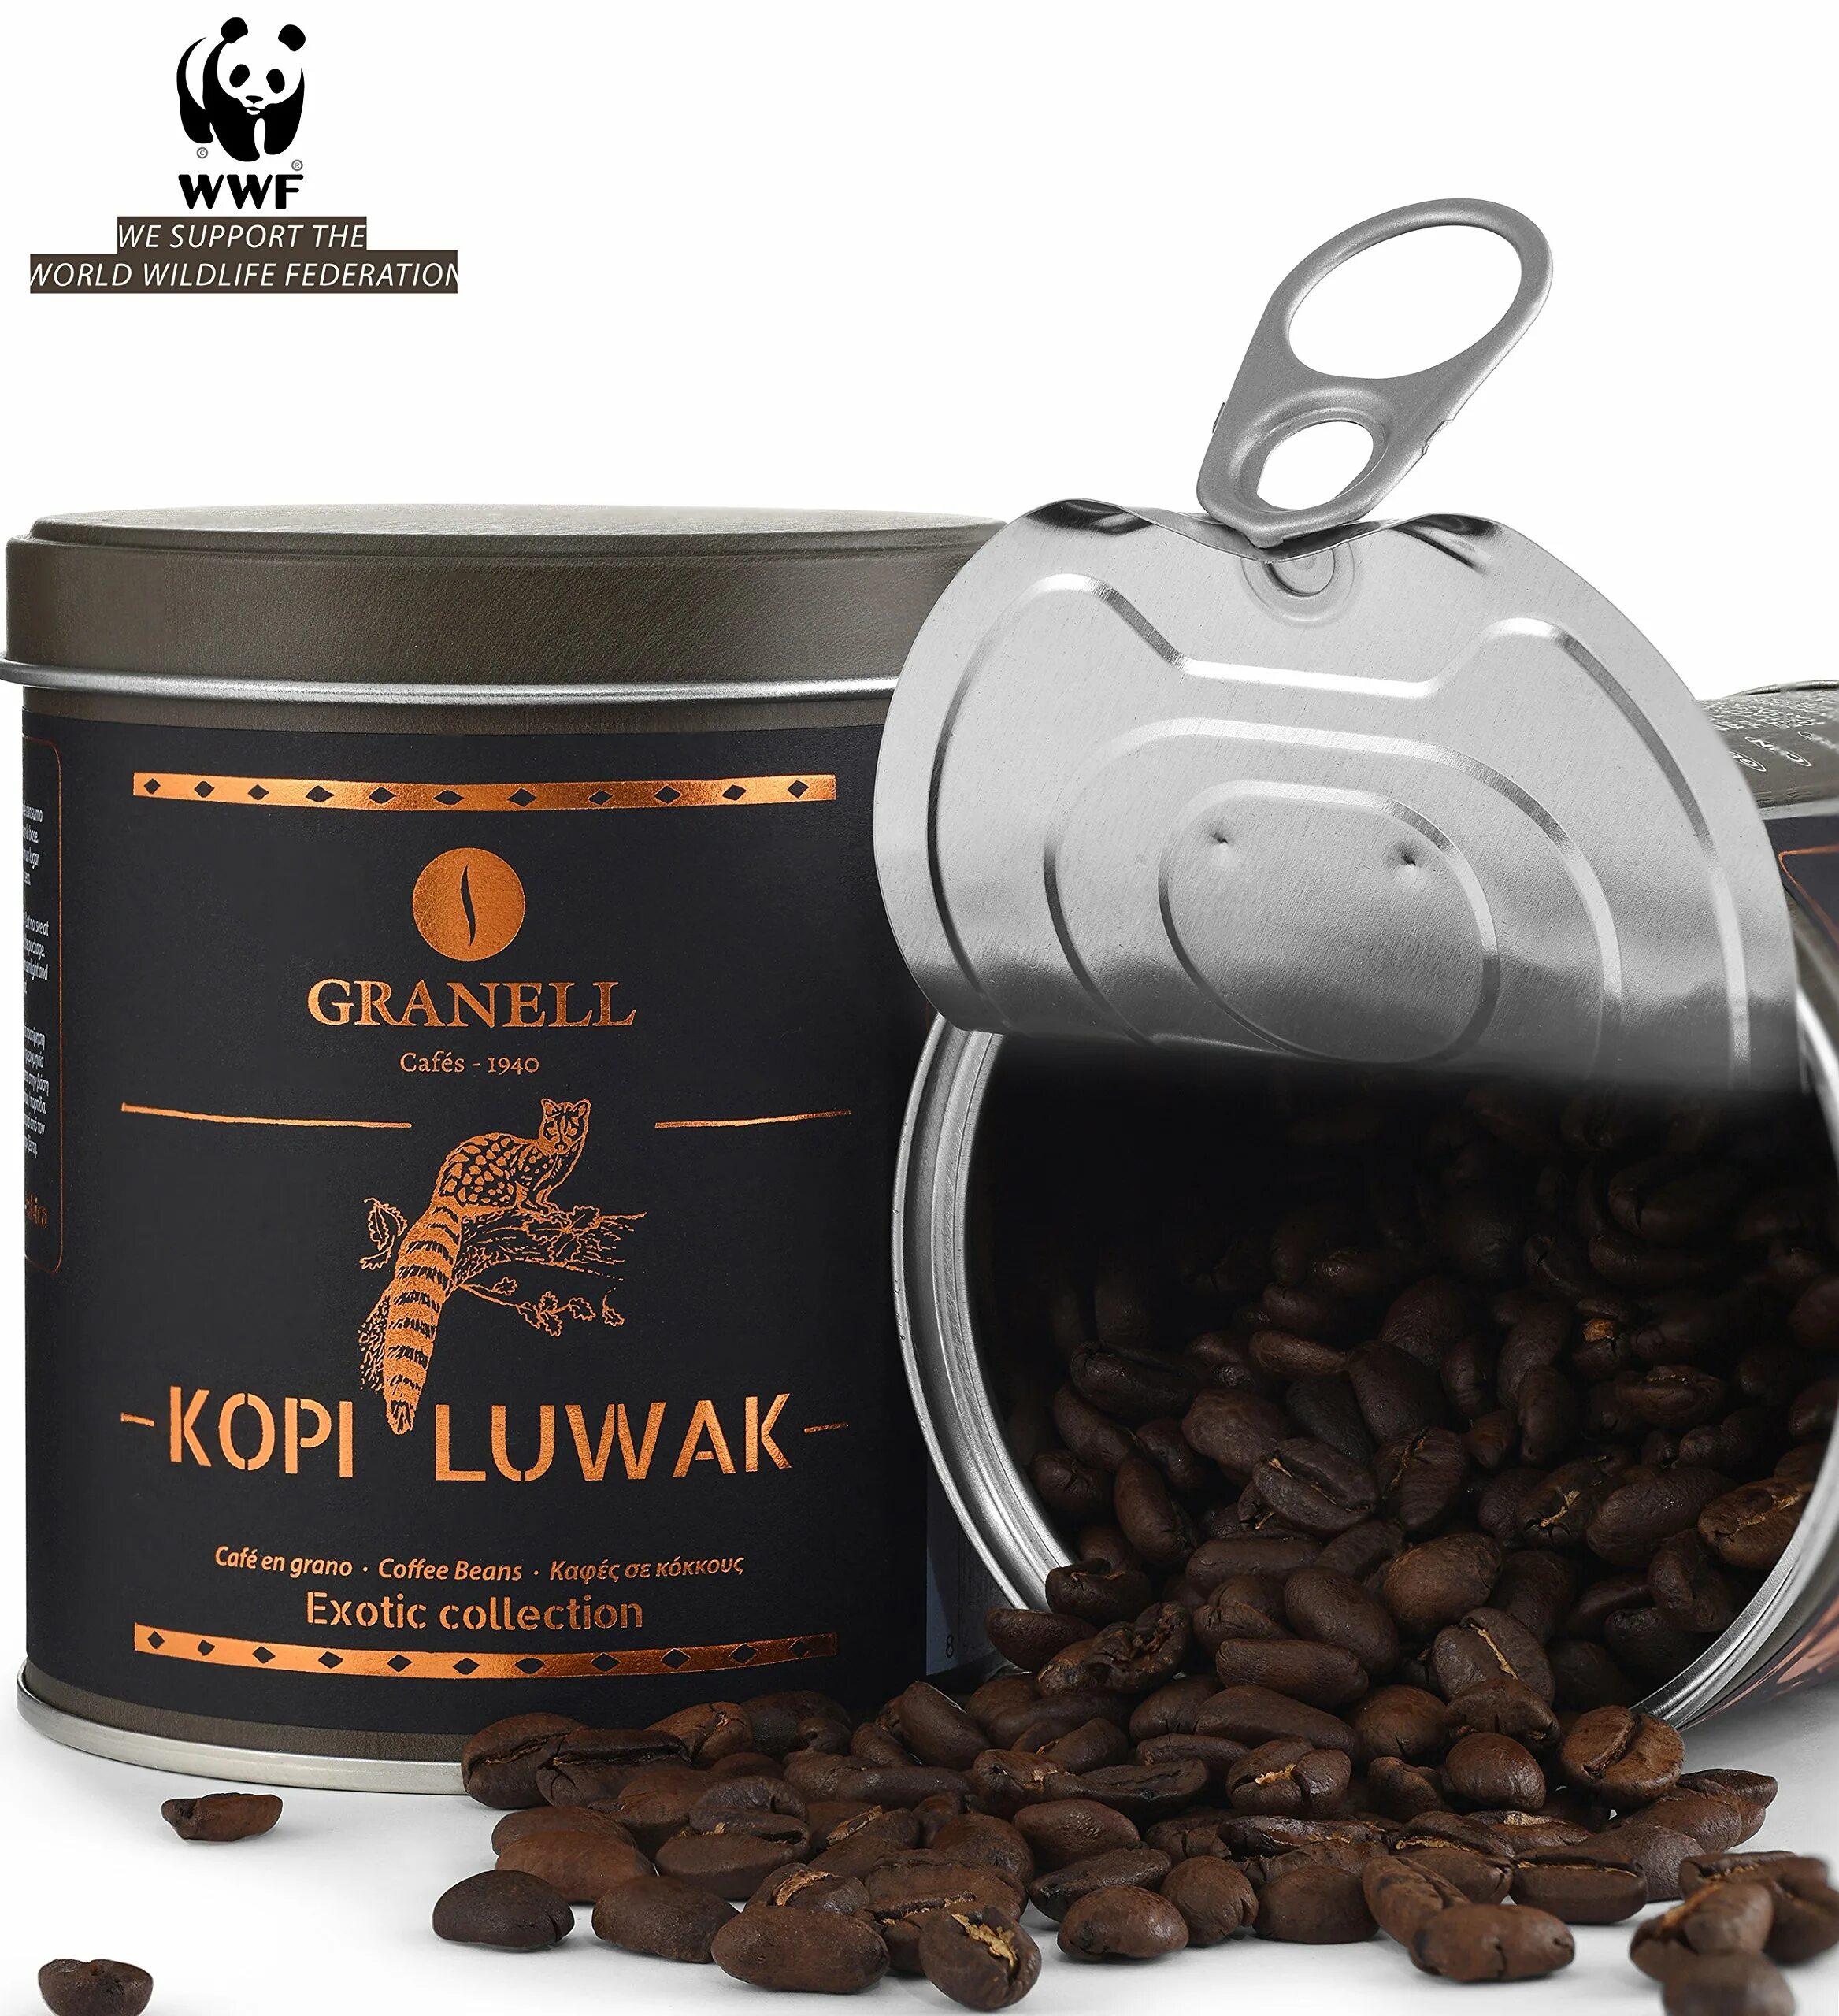 Какое кофе купить в магазине. Сорт кофе копи Лювак. Kopi Luwak вилд кофе. Самый дорогой кофе kopi Luwak. Кофе Granell kopi Luwak.